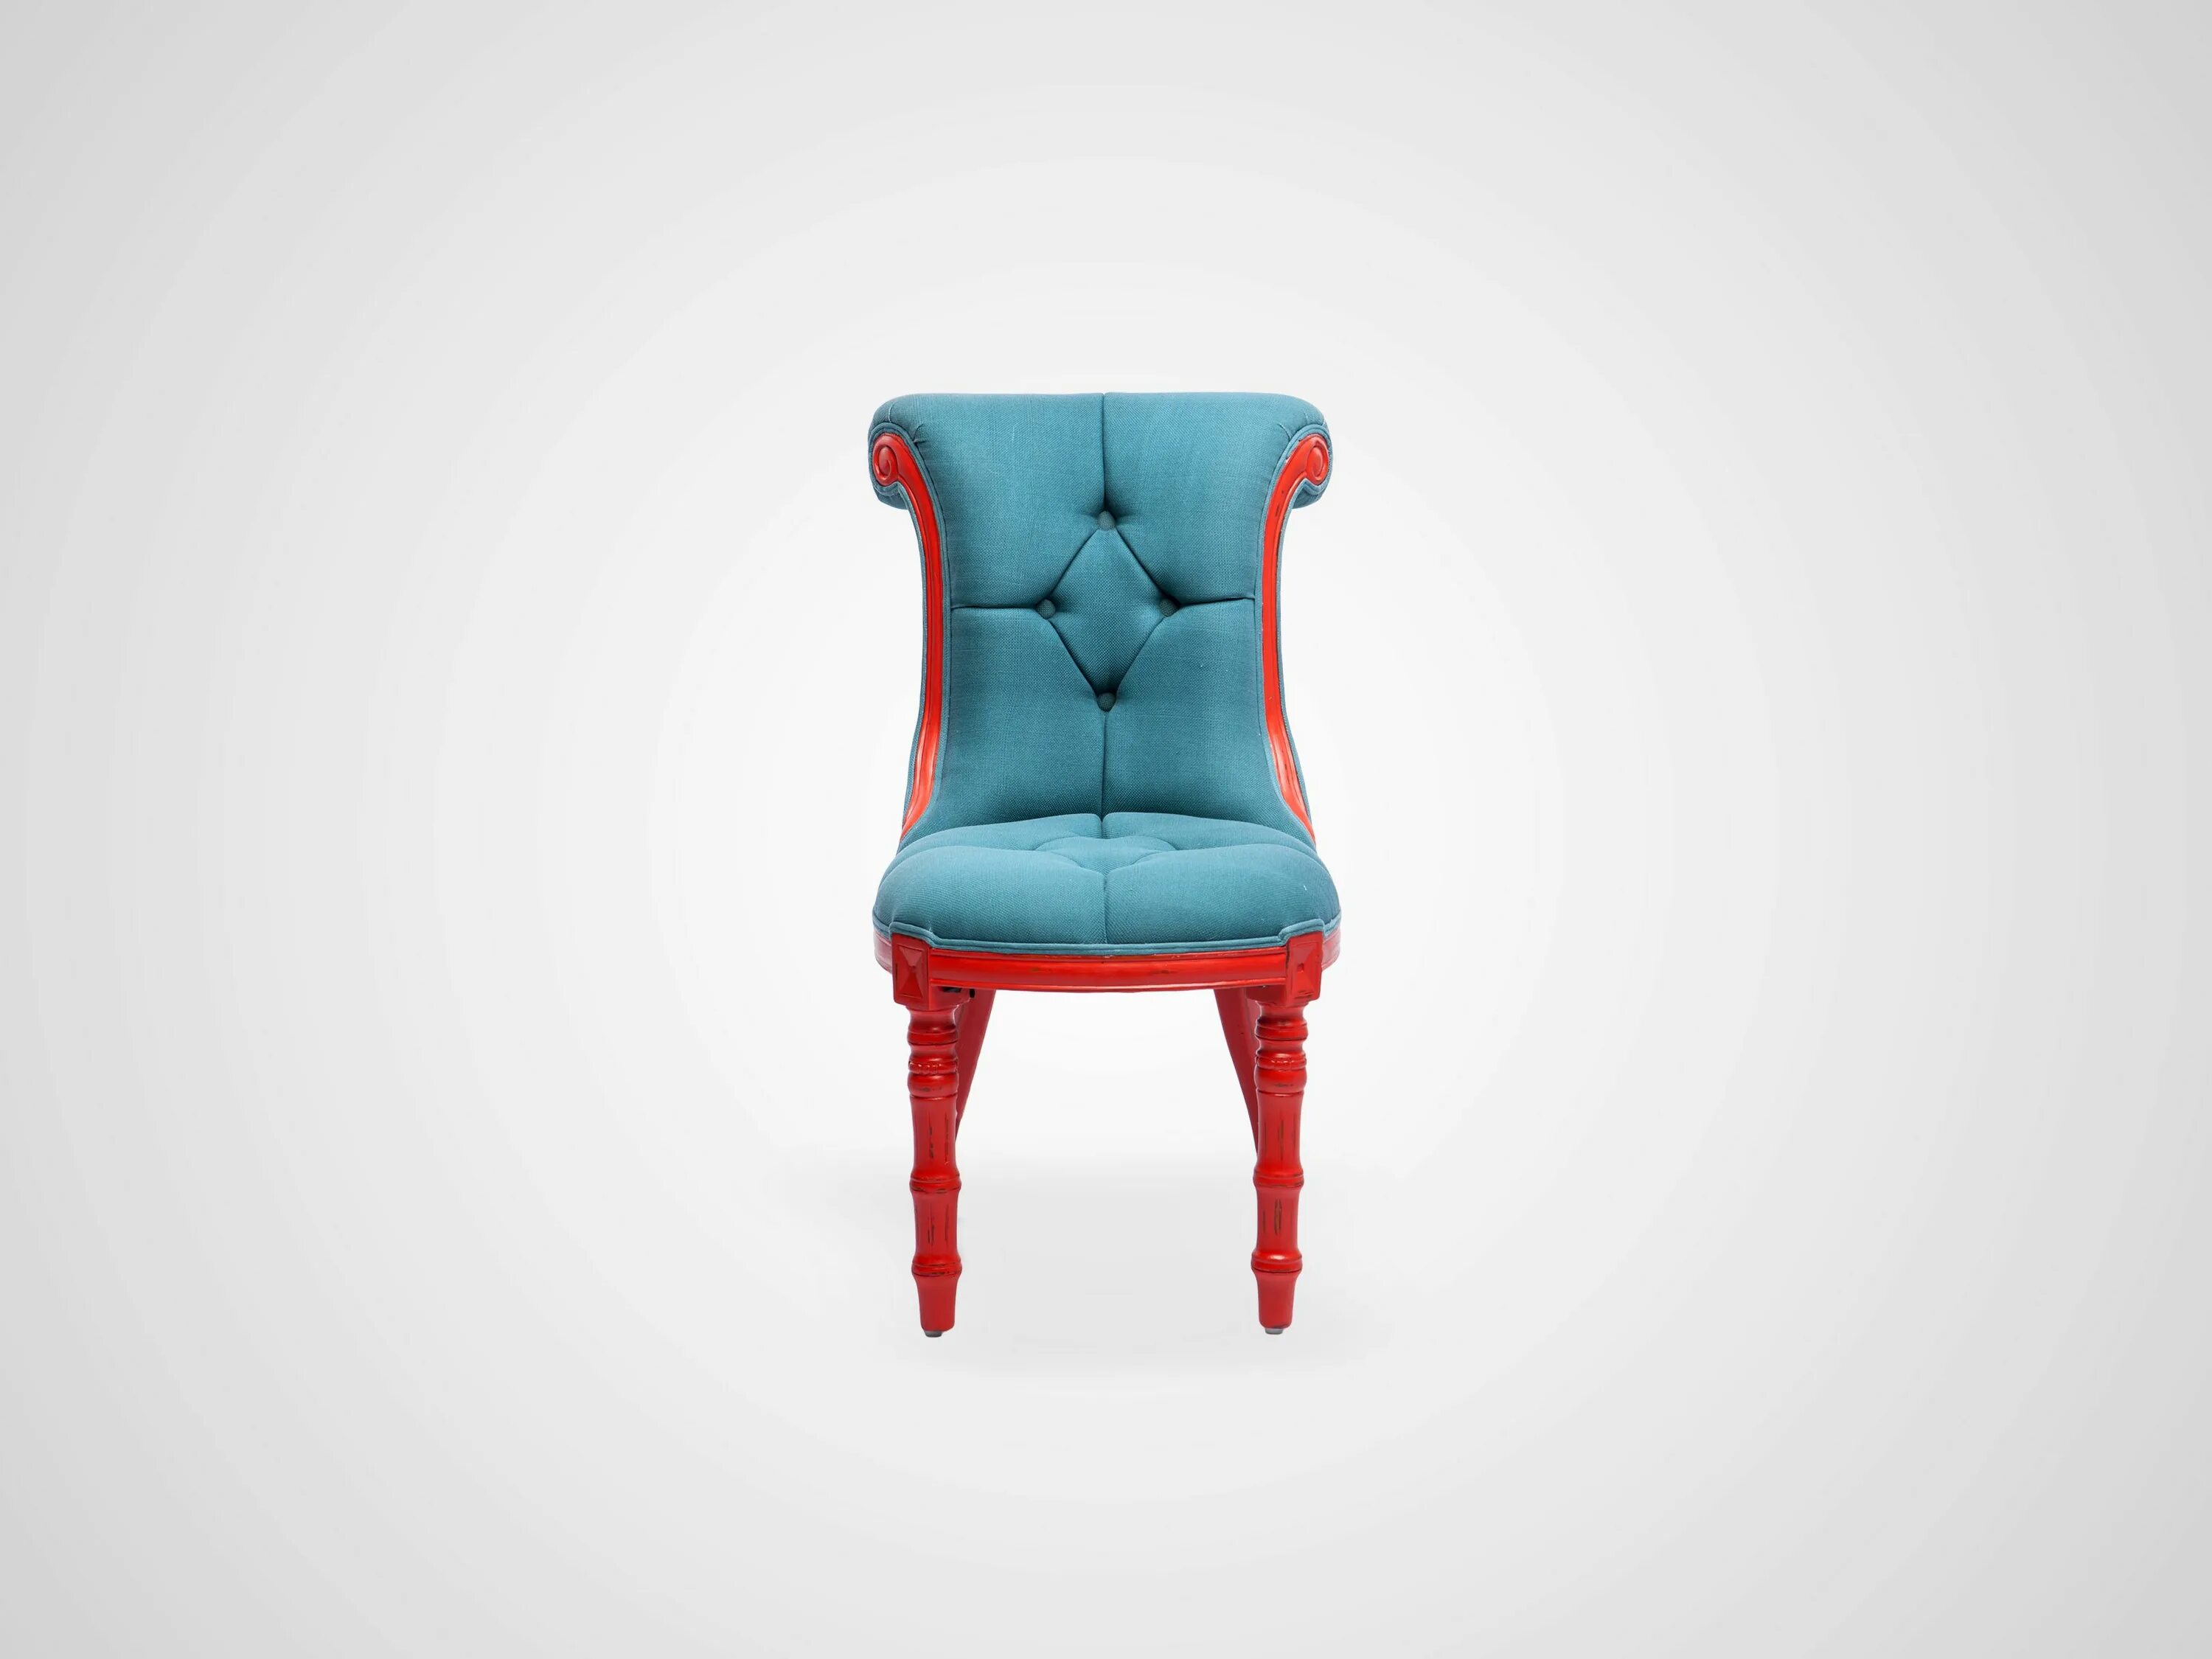 Яркий мягкий стул. Стул дизайнерский мягкий. Яркое кресло. Дизайнерские стулья с мягкой обивкой. Купить стулья улан